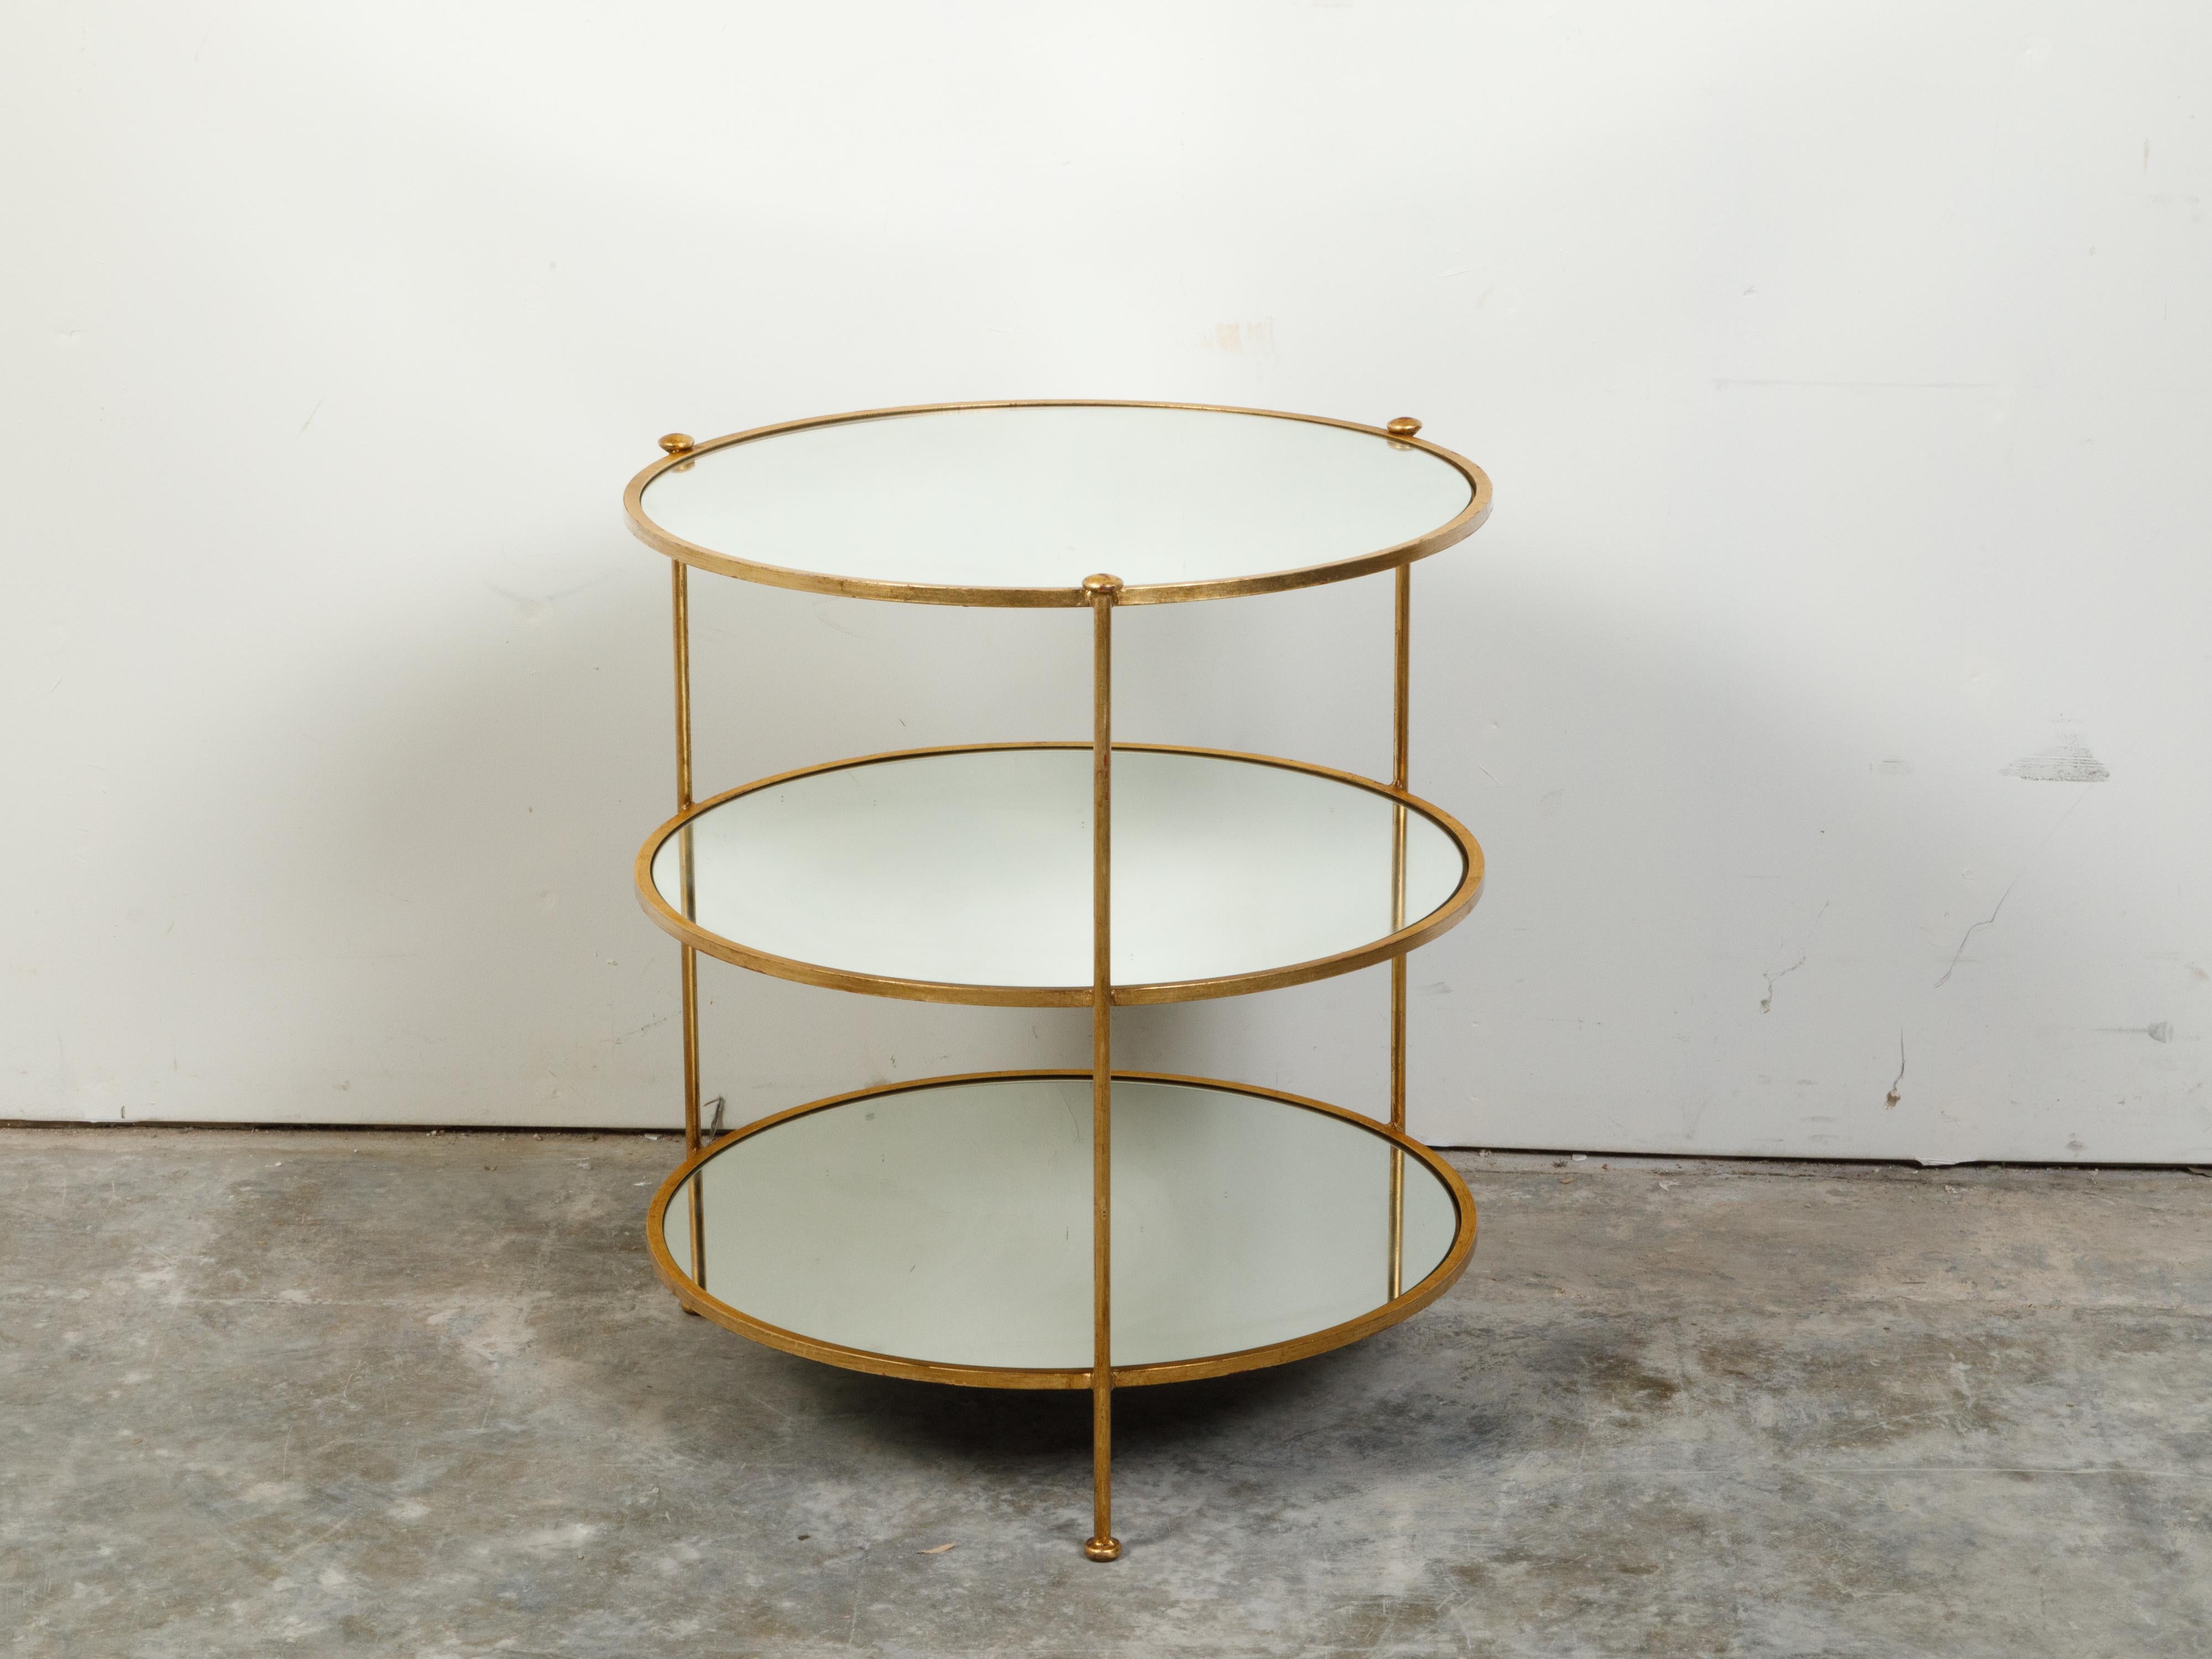 Table d'appoint italienne en fer doré à trois niveaux, datant du milieu du XXe siècle, avec des étagères rondes en miroir. Créée en Italie au cours de la période Midcentury, cette table d'appoint comporte trois étagères circulaires en miroir fixées